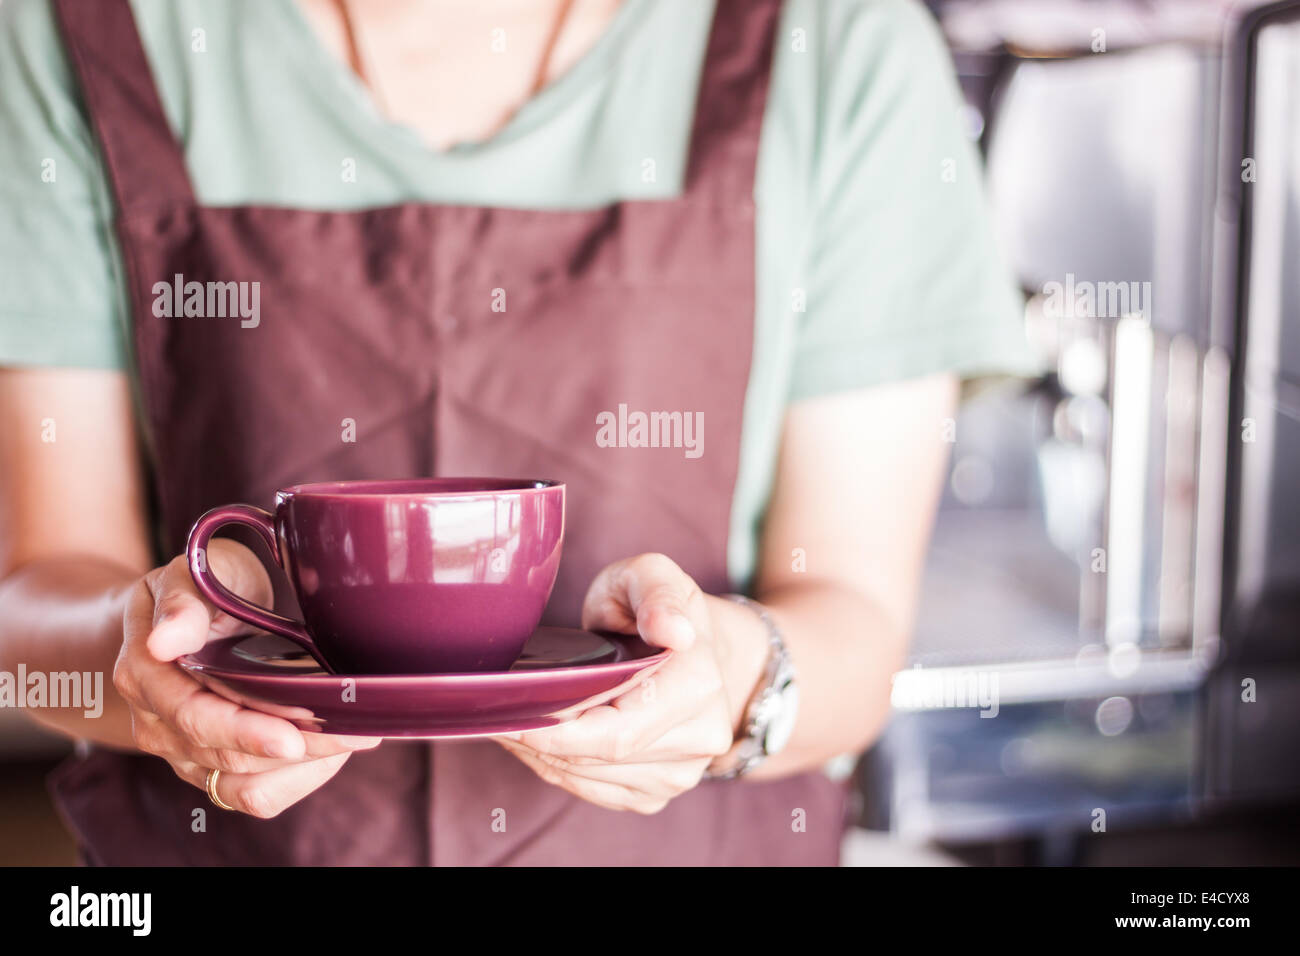 Proprietario del negozio che serve caffè appena fatto, stock photo Foto Stock